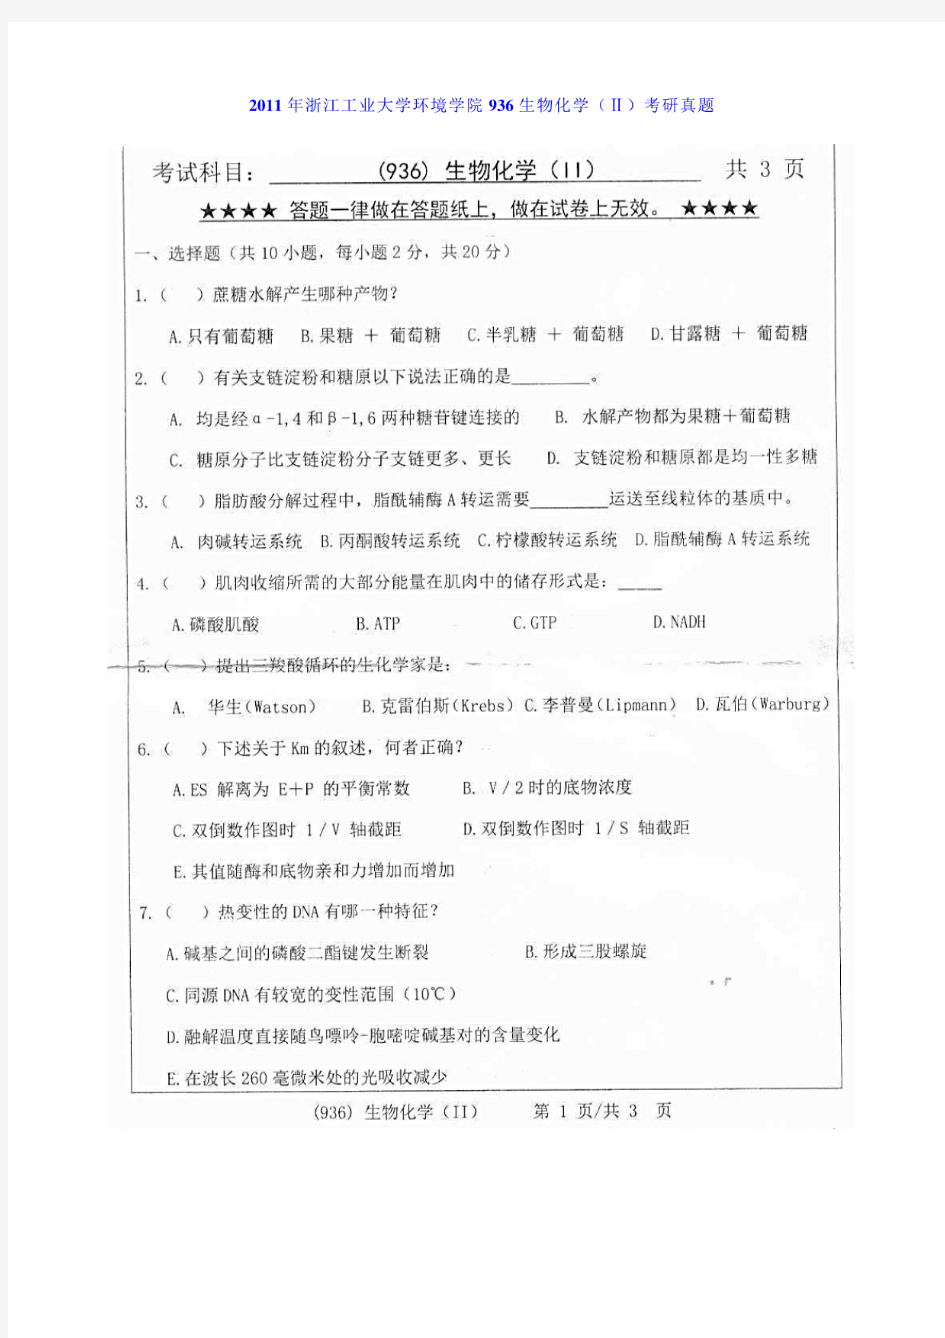 浙江工业大学936生物化学(Ⅱ)11-19年真题